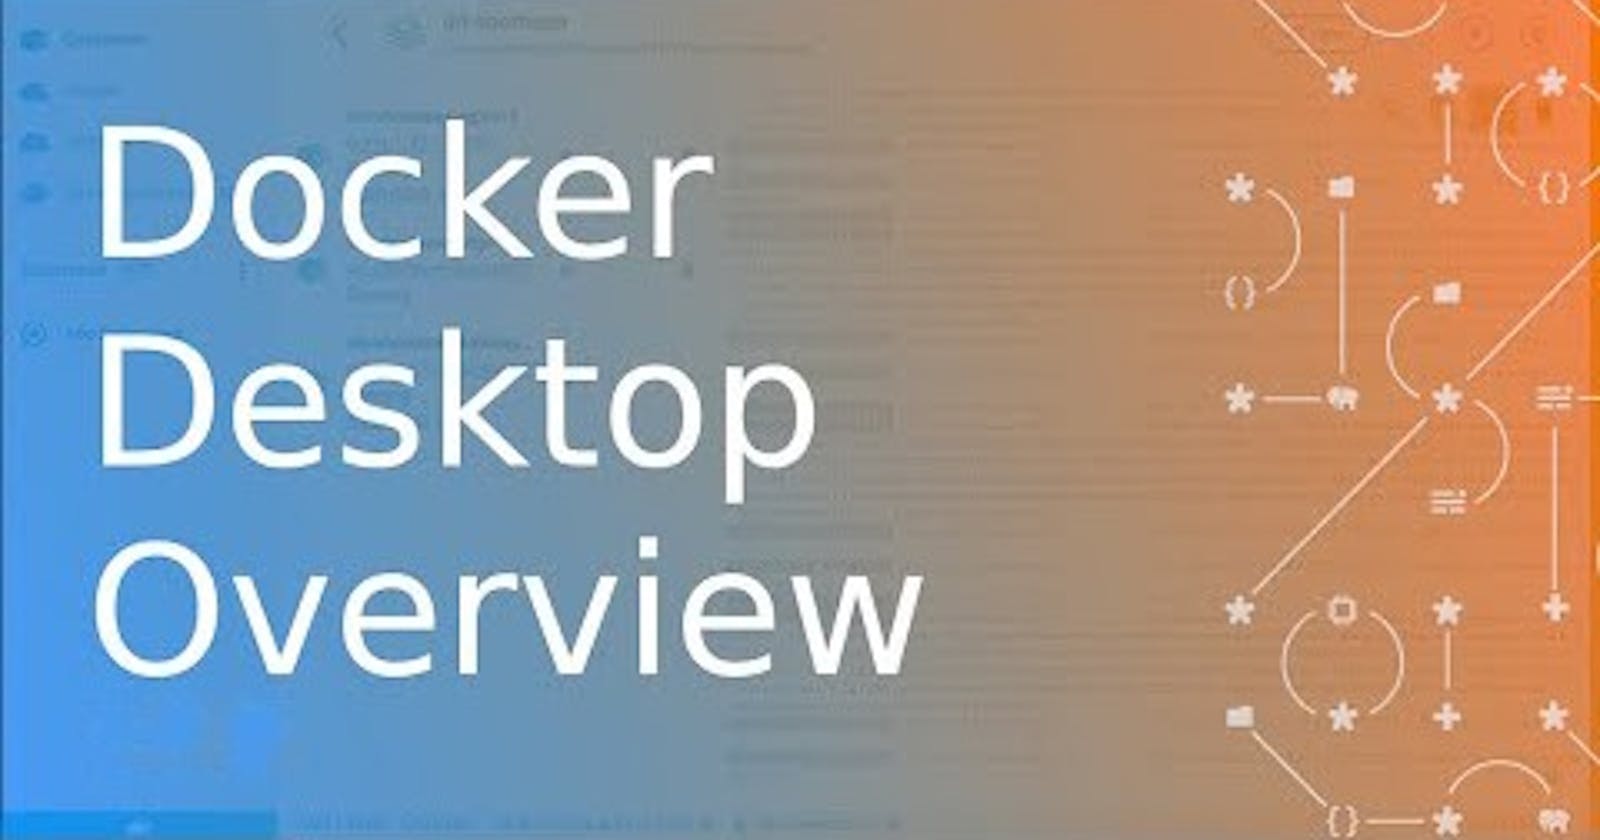 Overview of Docker Desktop